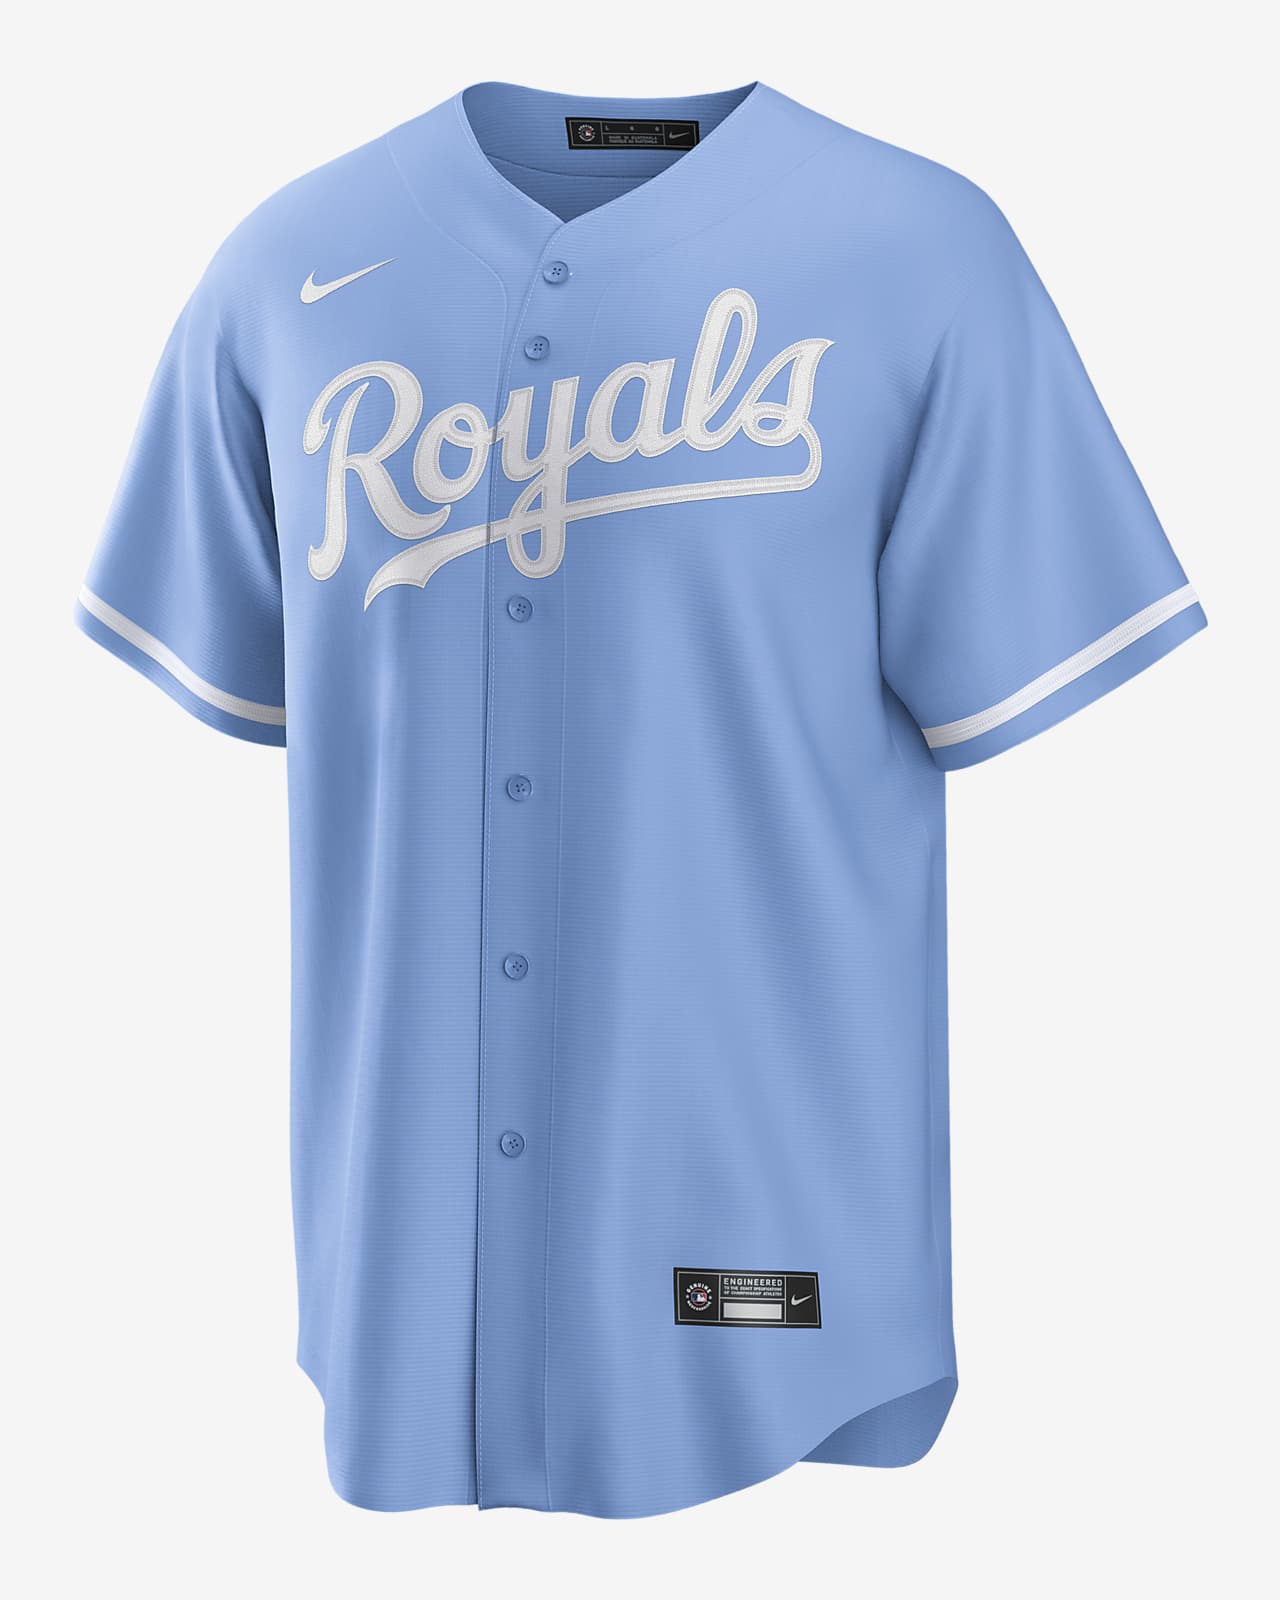 royals baseball shirts